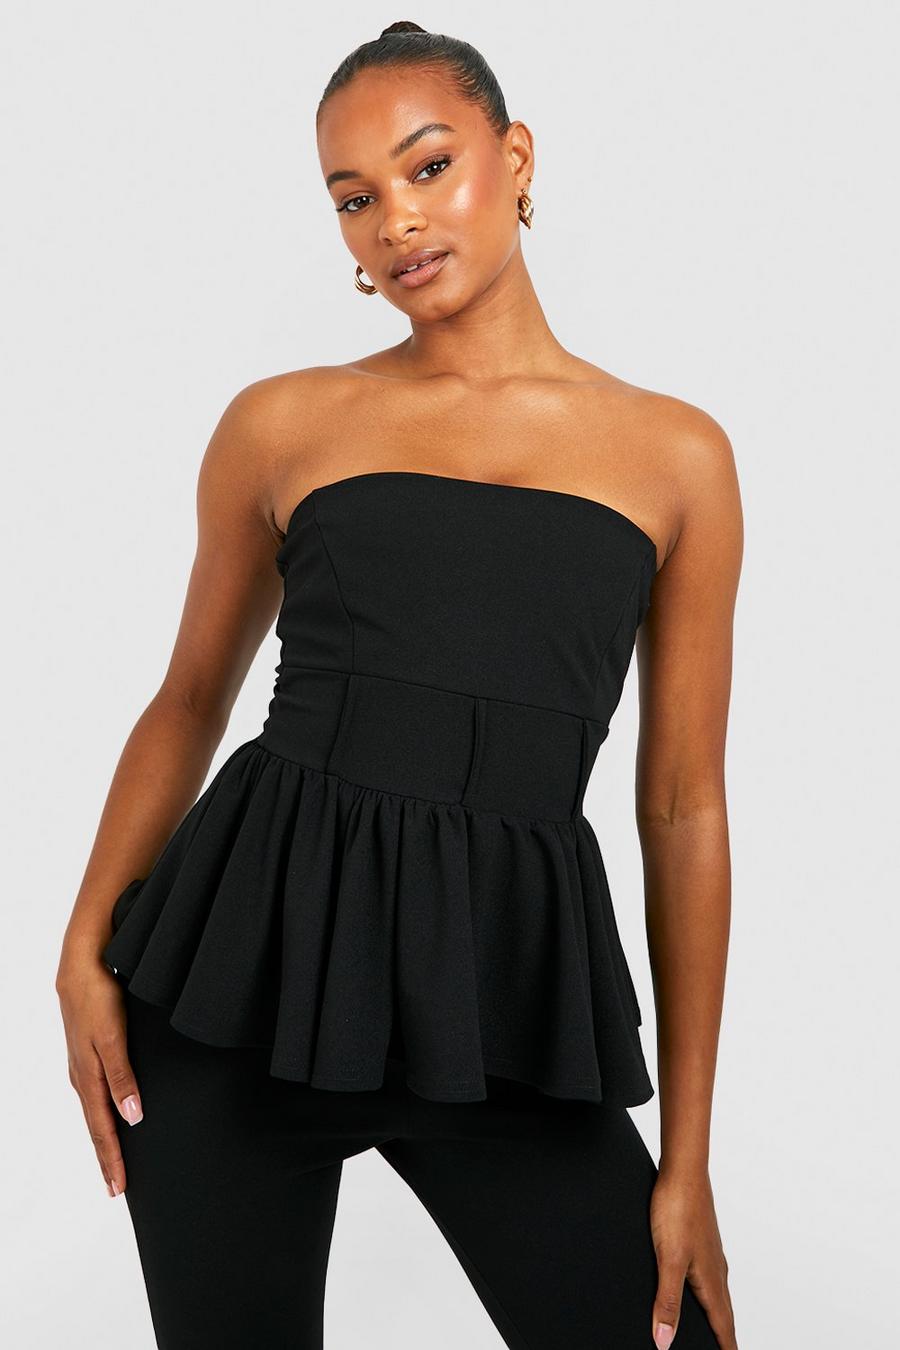 https://media.boohoo.com/i/boohoo/gzz51778_black_xl/female-black-tall-corset-seam-peplum-strapless-top/?w=900&qlt=default&fmt.jp2.qlt=70&fmt=auto&sm=fit